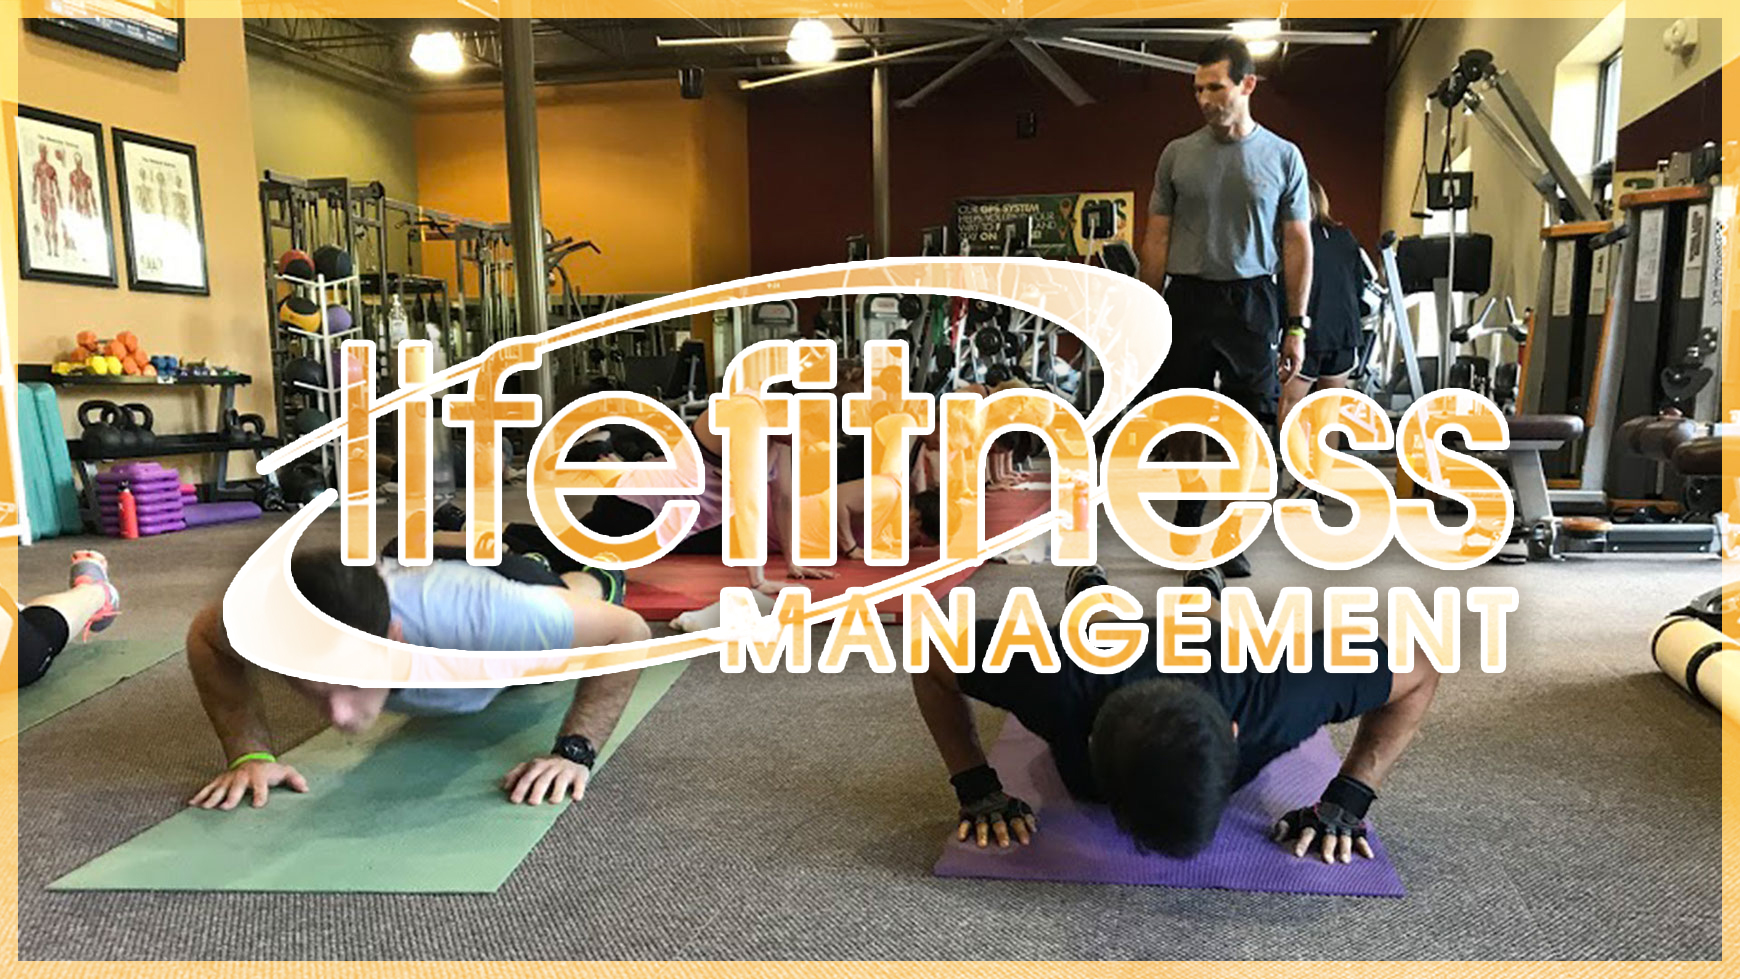 Life Fitness Management - Life Fitness Management